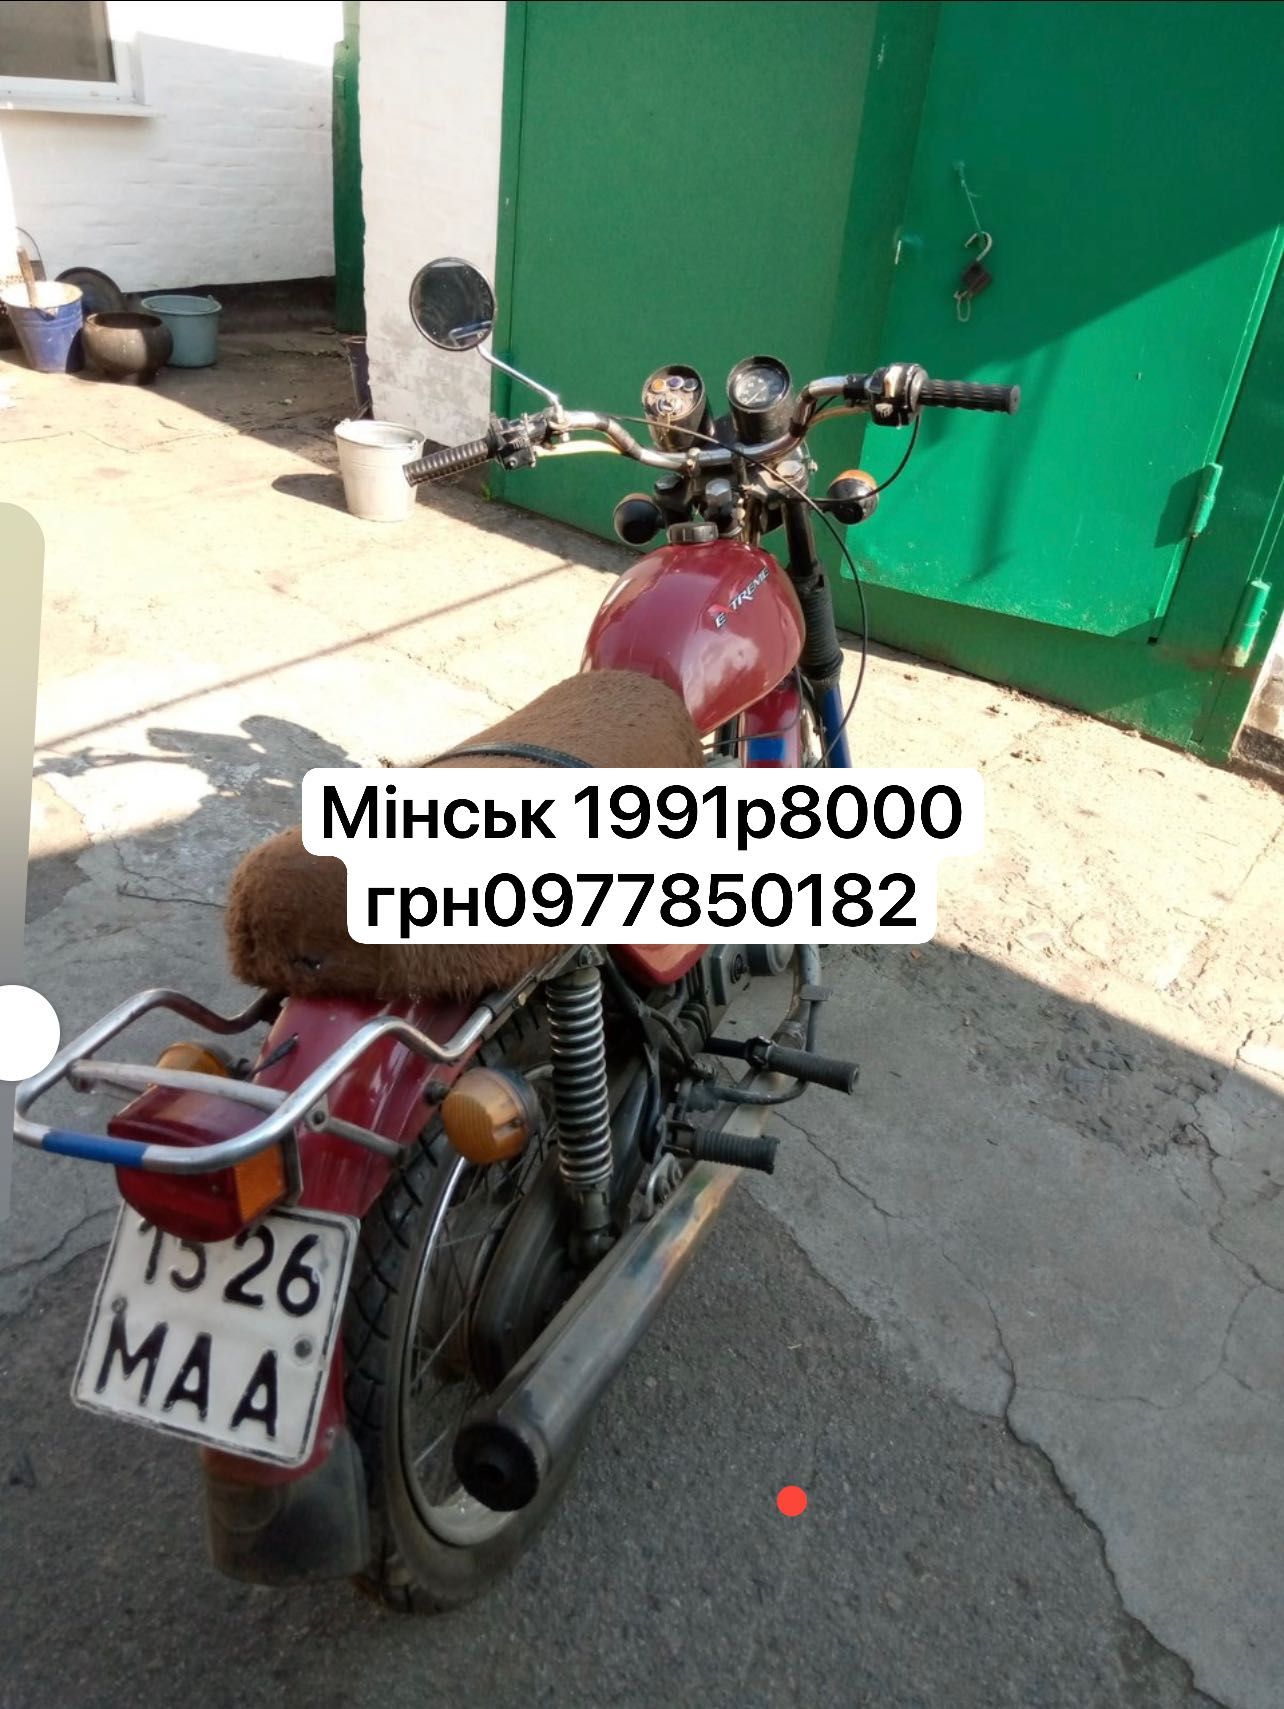 Продається мотоцикл Мінськ 1991 р 8000 грн з документами